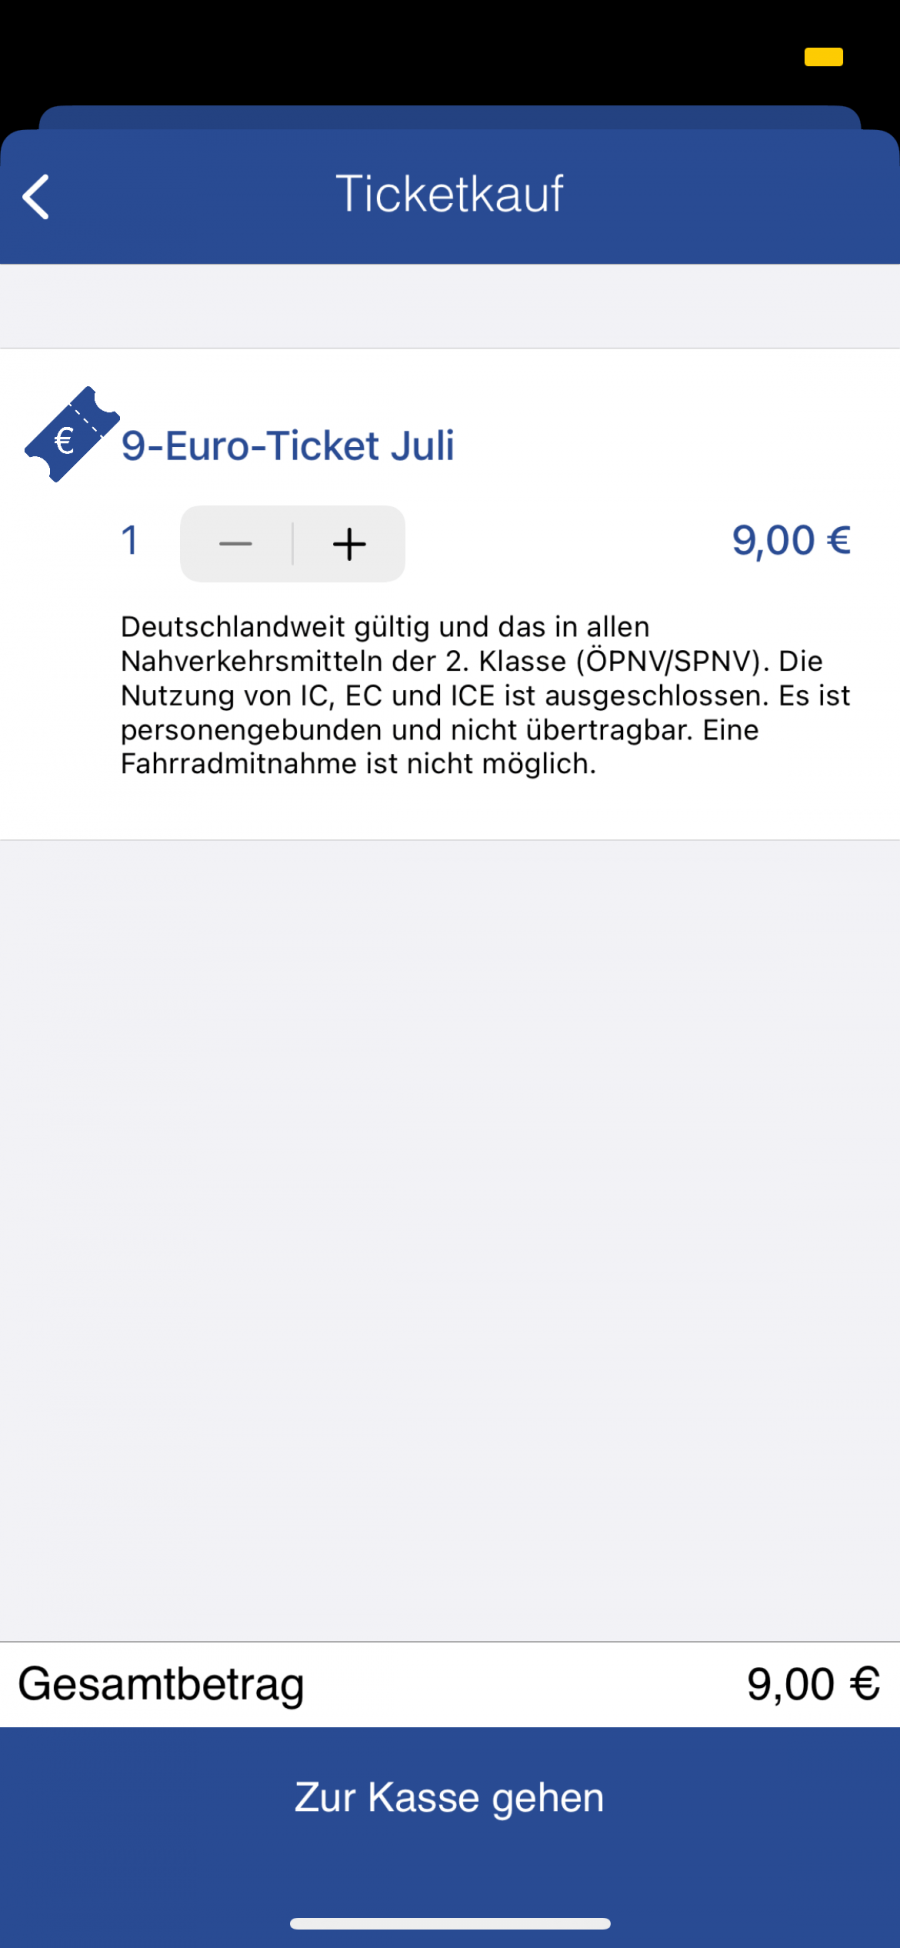 9-Euro-Ticket für den Juli in der Mutti-App der Bogestra